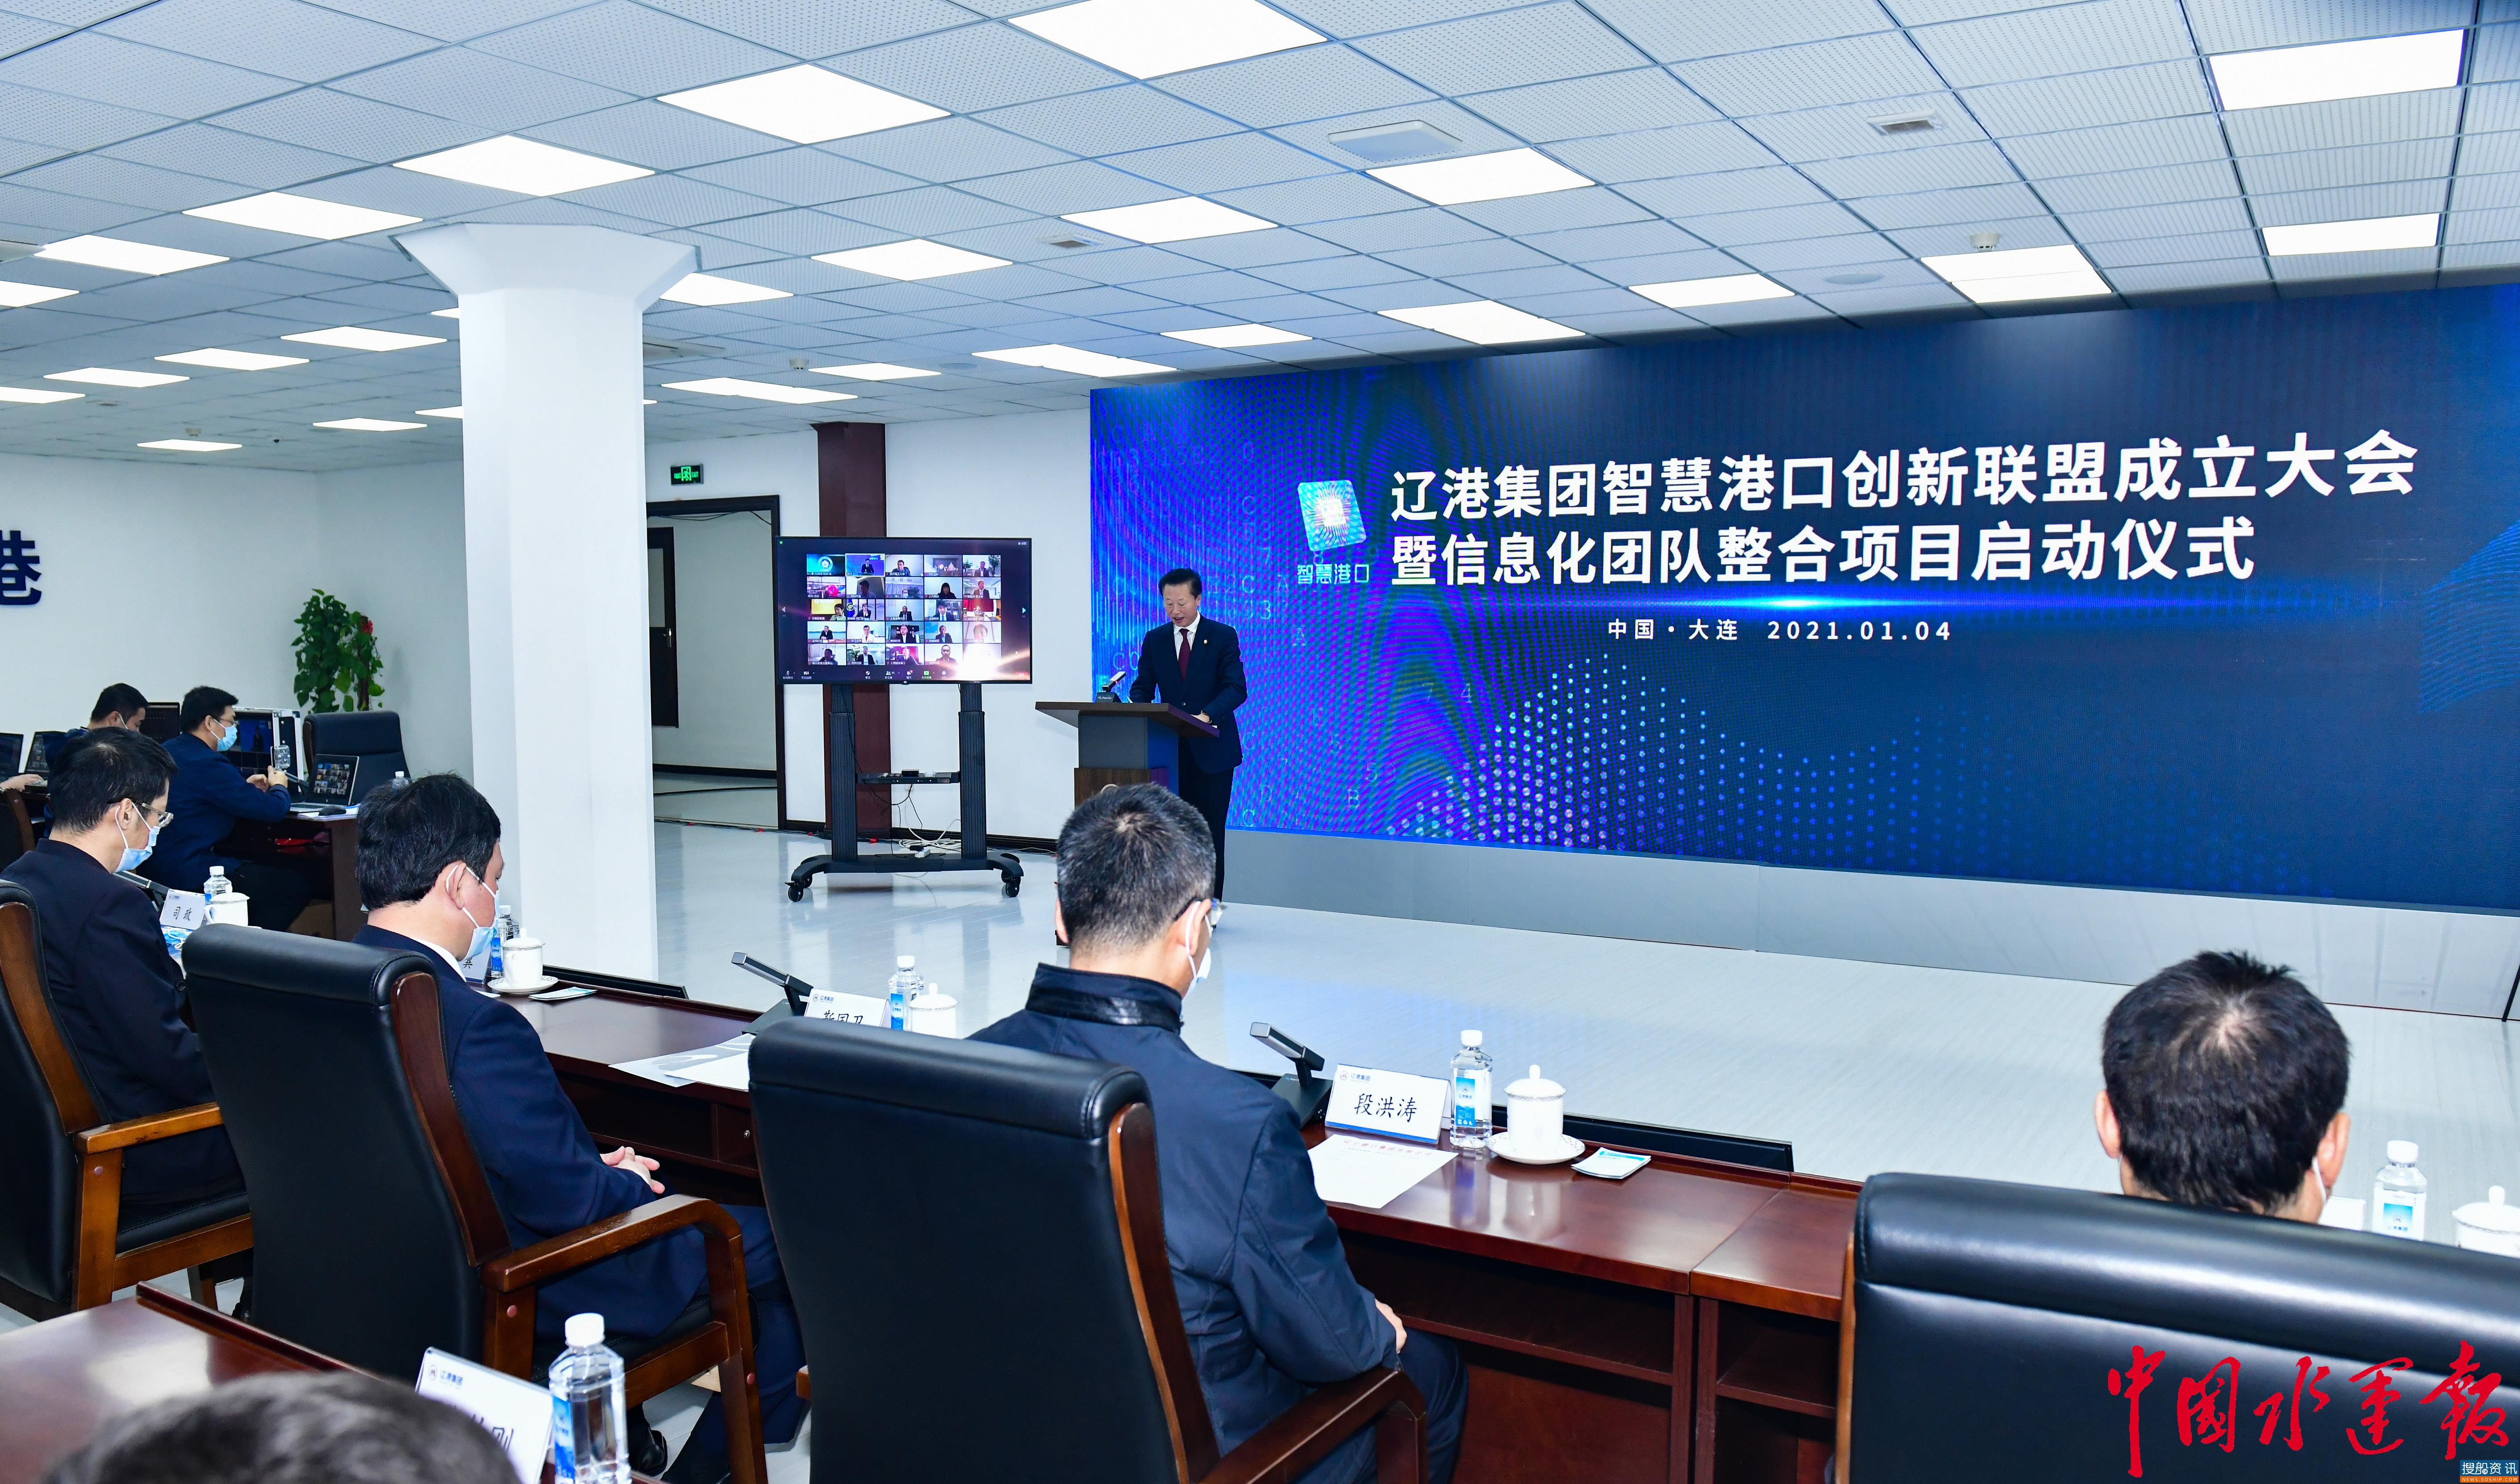 科技引领 创新驱动 共赢未来  智慧港口创新联盟在辽港集团发起成立